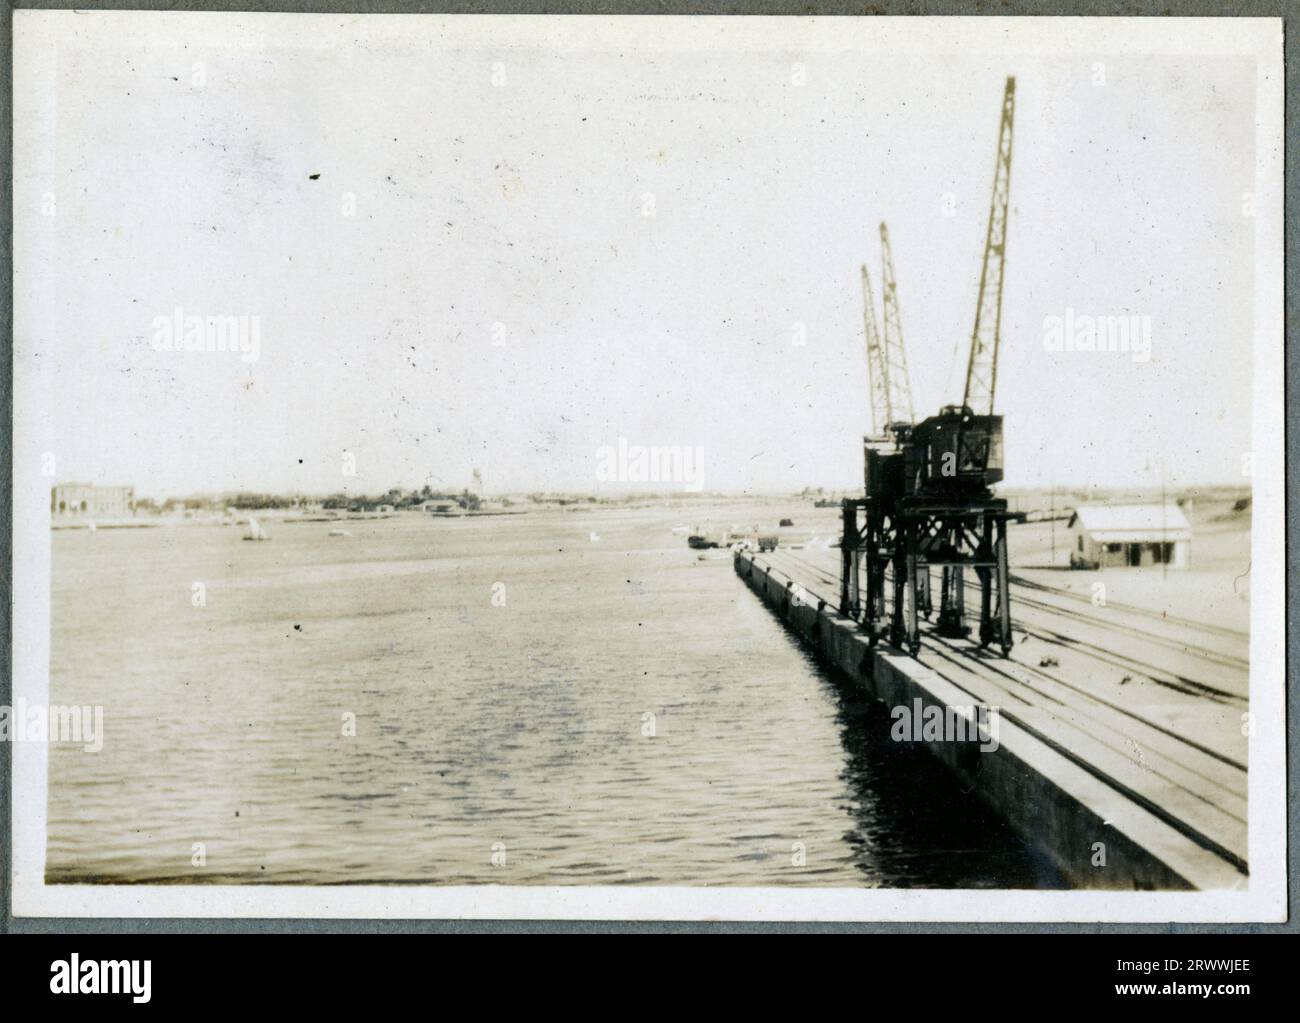 Eines von drei Fotos mit dem Titel „Investing Port Sudan 1932“. Dieses Bild zeigt ein kleines Boot auf See mit dem Land dahinter. Originalhandschrift: Enting Port Sudan 1932. Stockfoto